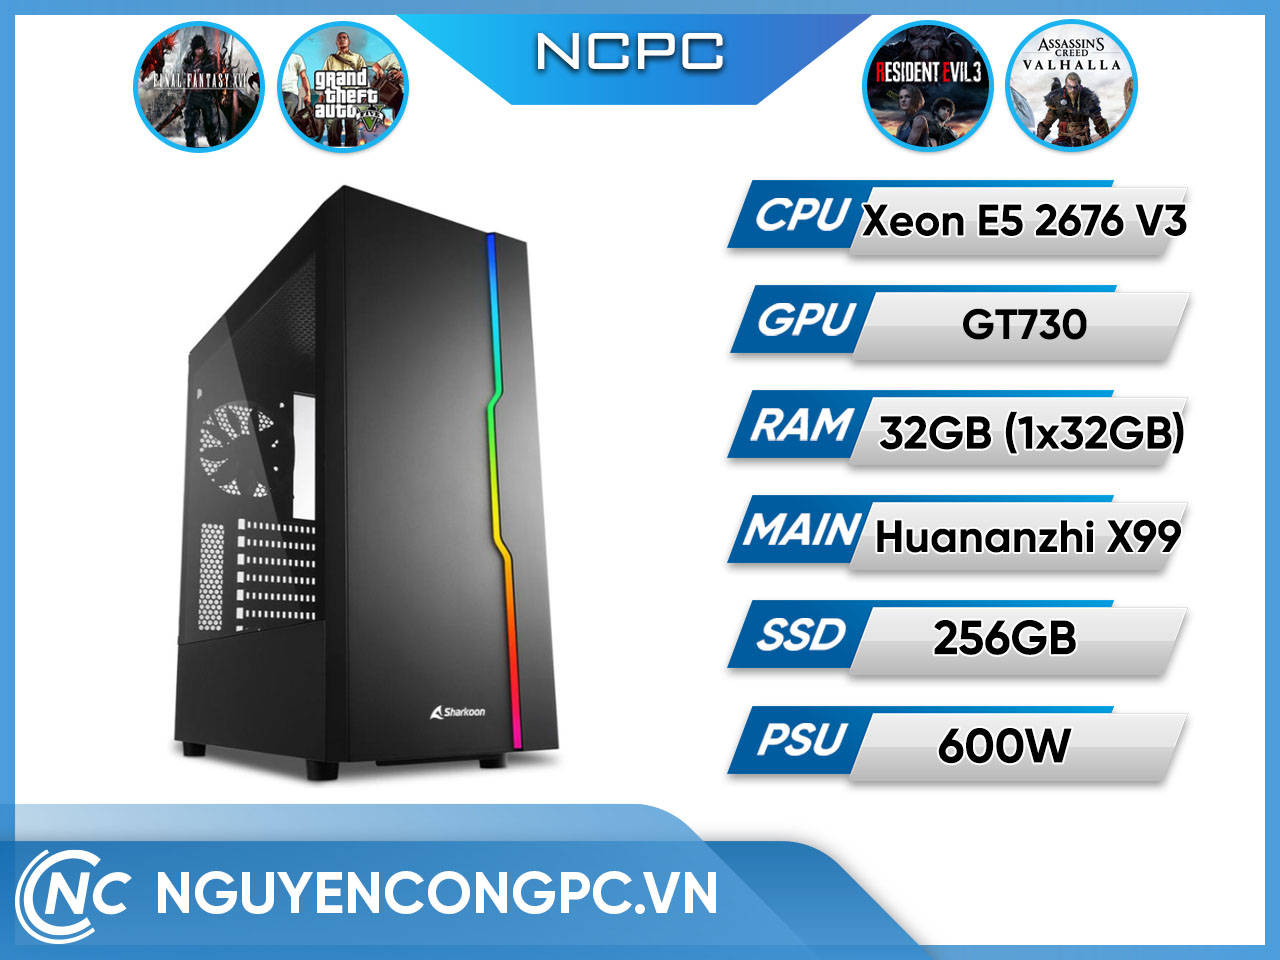 NCPC (Xeon E5 2676V3/ Huananzhi X99/ 32GB RAM/ 256GB SSD/ GT730)